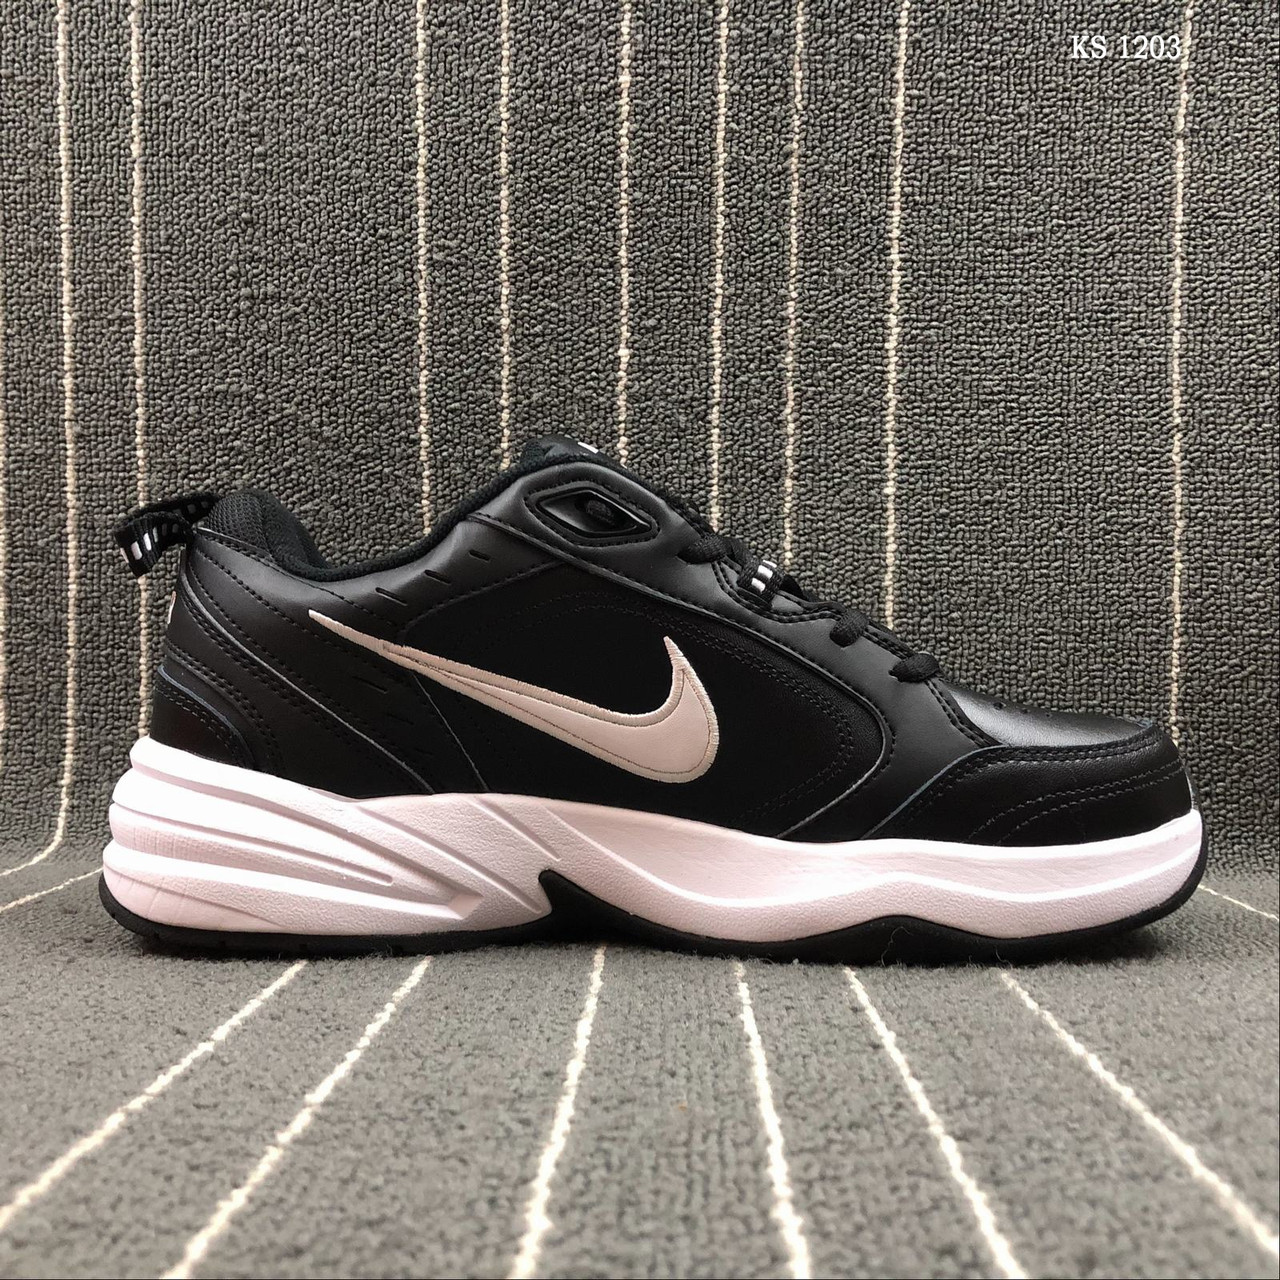 

Мужские кроссовки в стиле Nike Air Monarch IV, натуральная кожа, черные с белым 45(29 см), размеры:41,42,45